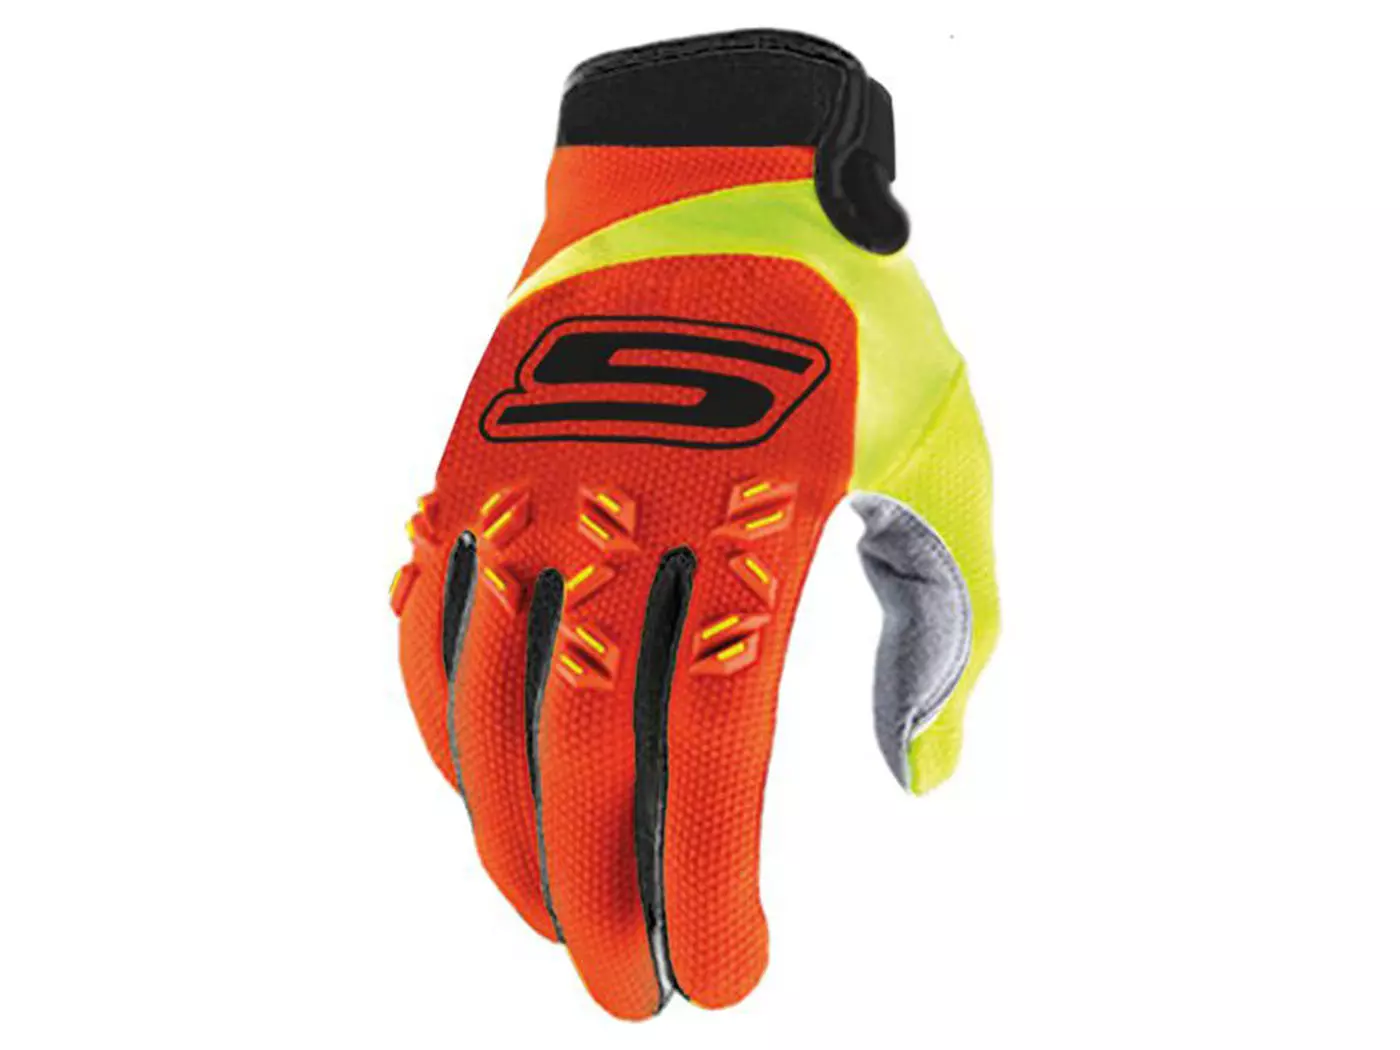 Handschoenen MX S-Line homologiert, orange / fluo-gelb - Maat XL